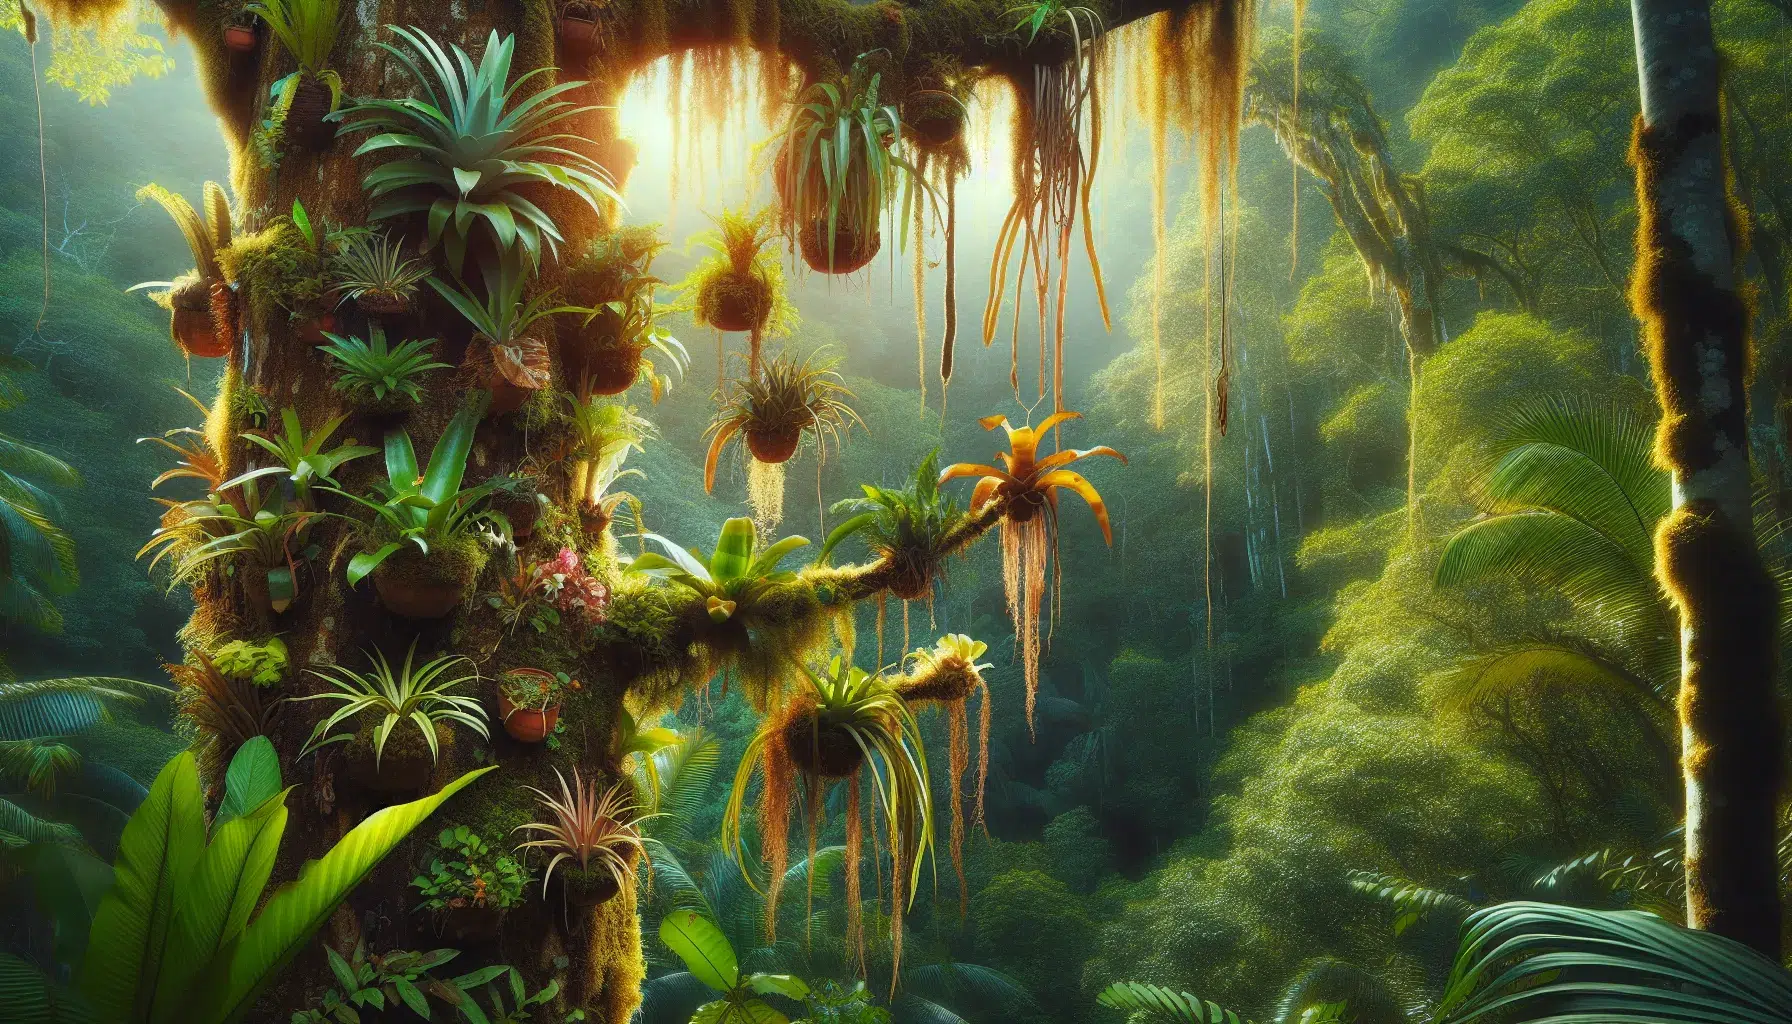 Imagen de varias epífitas en un árbol tropical, destacando su belleza y diversidad, acompañado del título Explorando el fascinante mundo de las epífitas y su asombrosa adaptación al entorno.